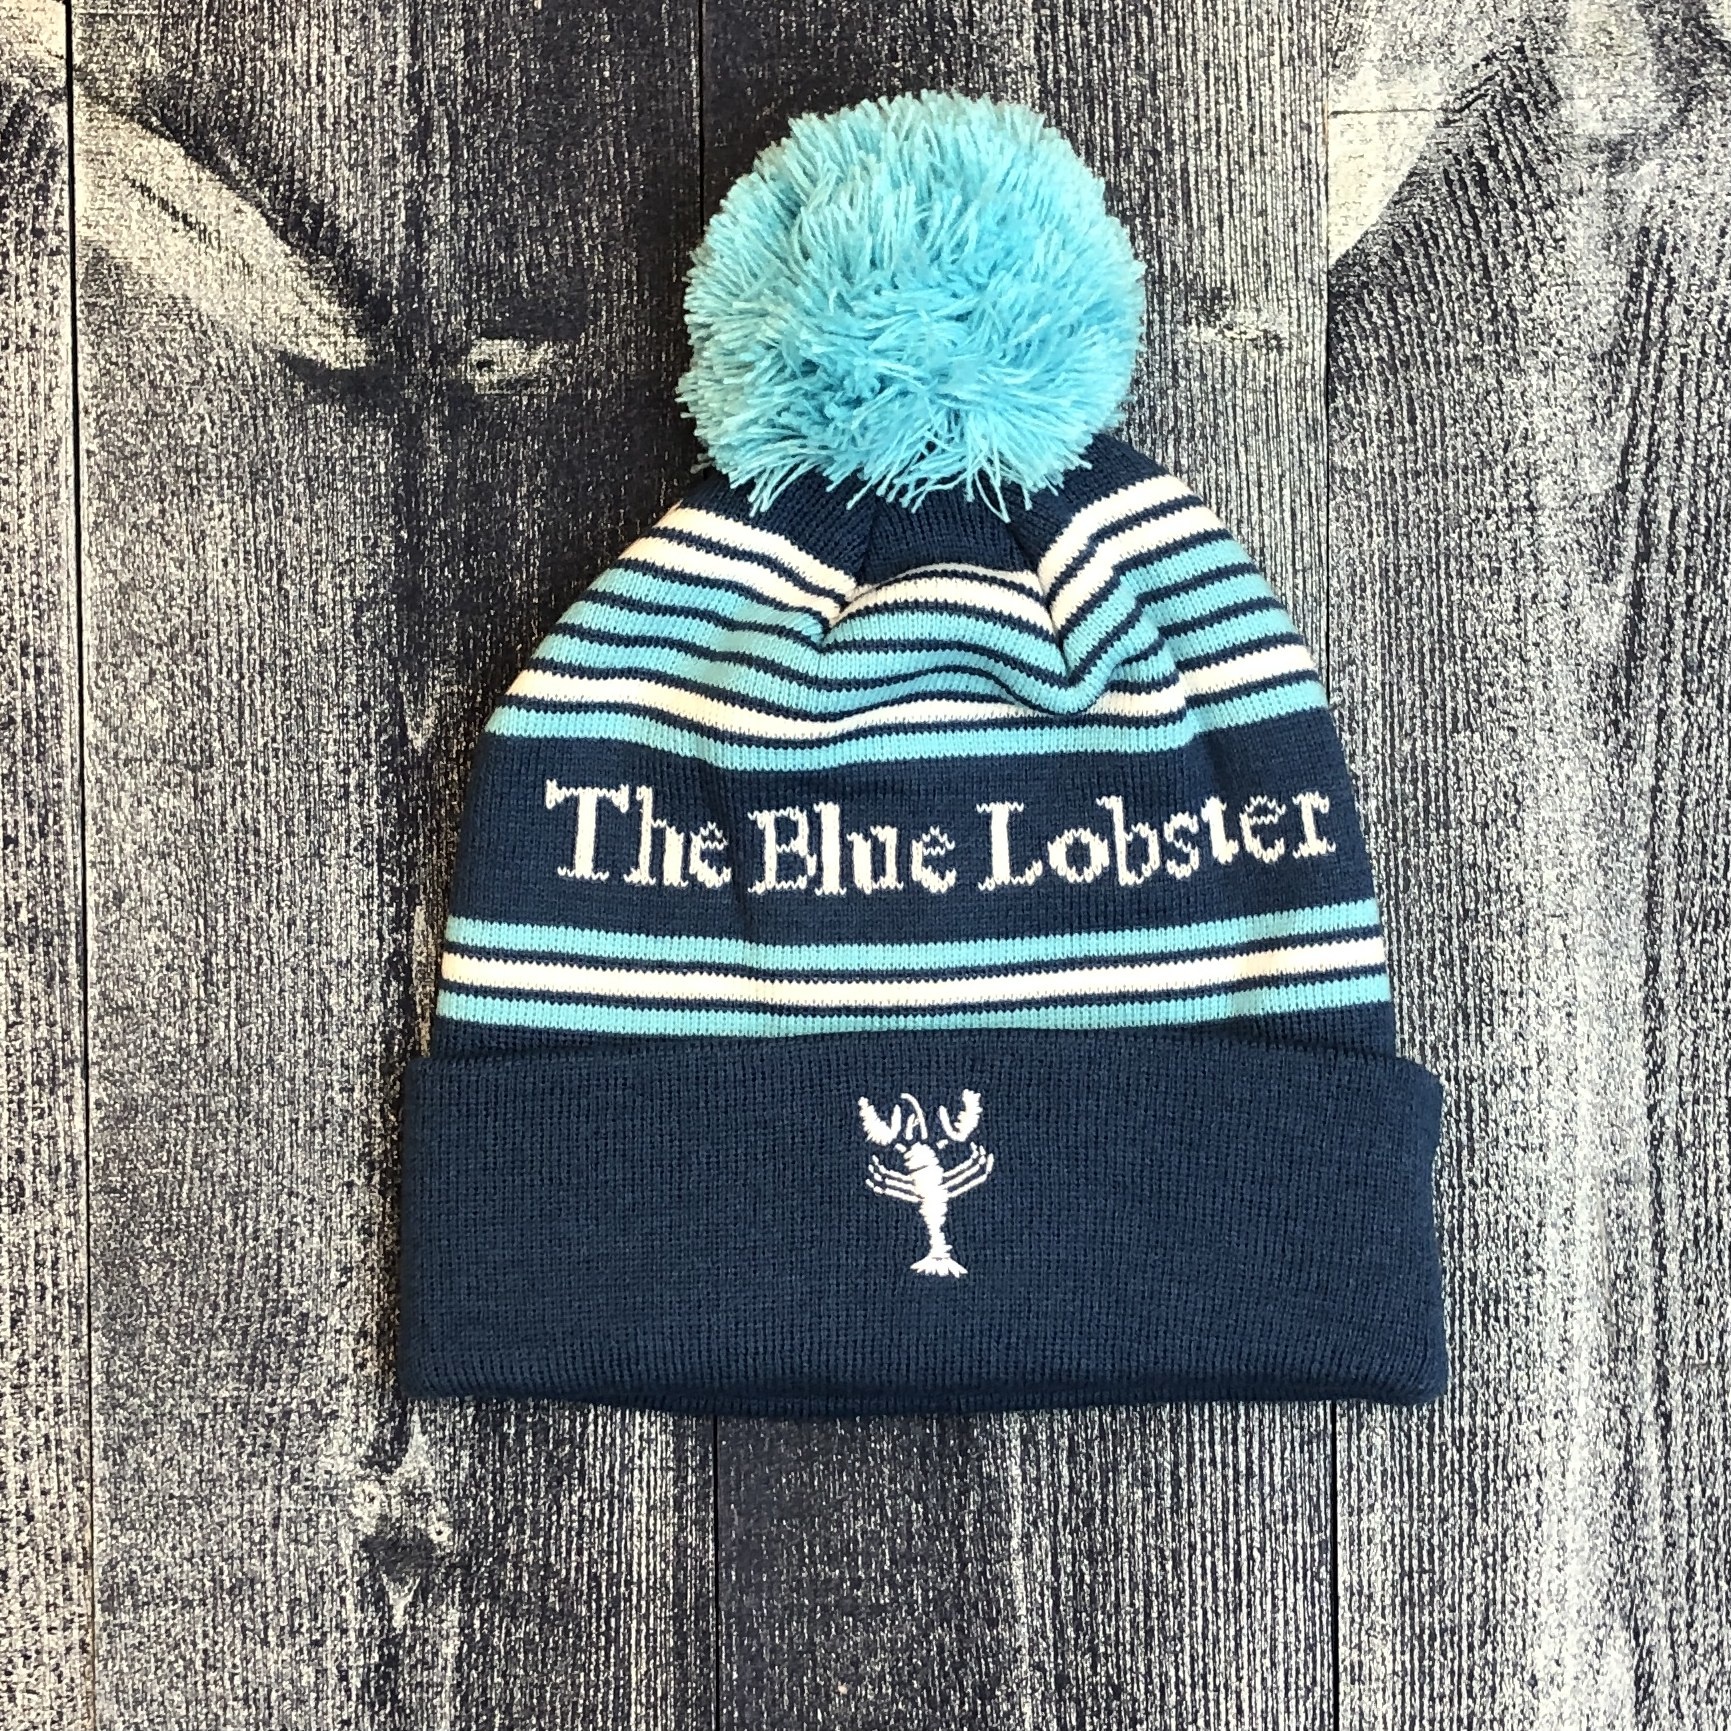 Breyer Blue Pom-Pom Winter Hat 